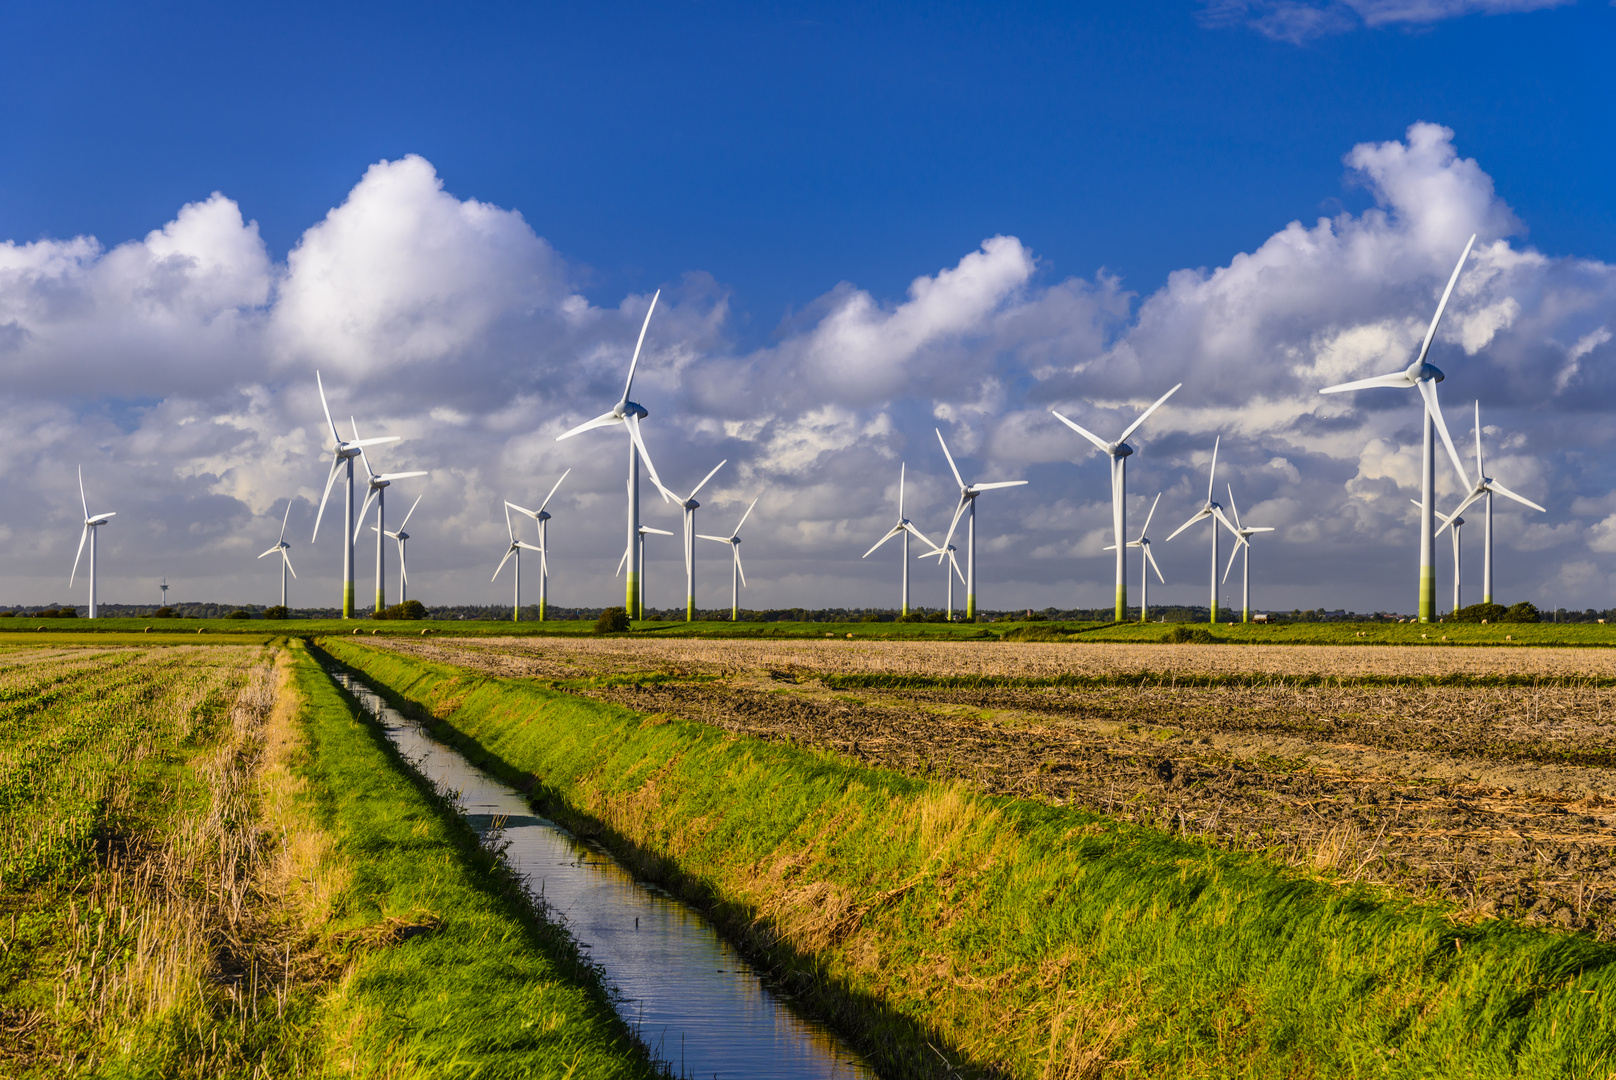 Marschland mit Windkraftanlagen, Nordfriesland